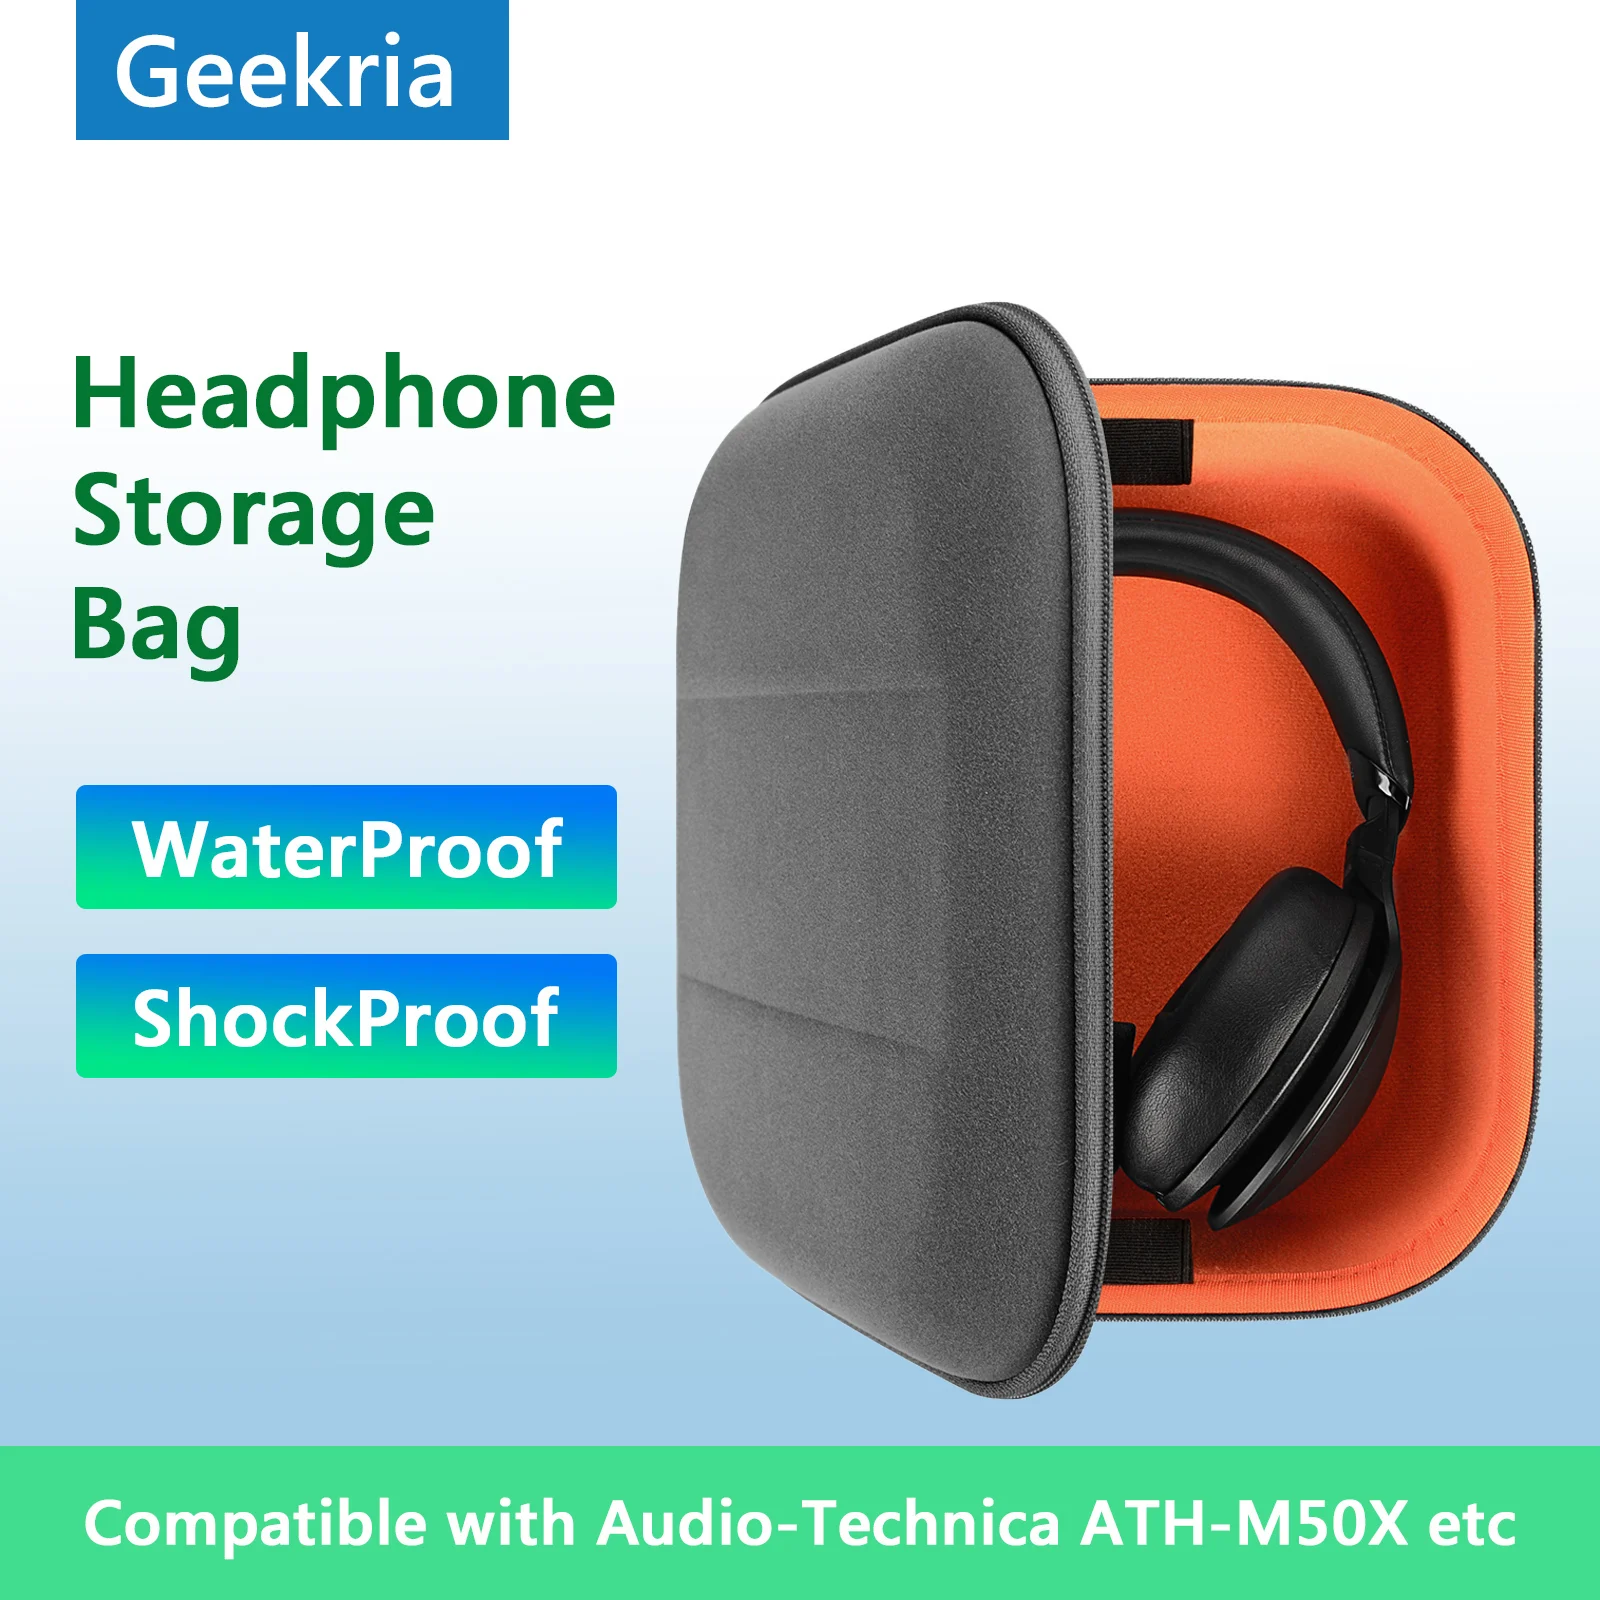 

Чехол Geekria для наушников чехол для Audio-Technica ATH-M50X чехол, Портативная сумка для наушников Bluetooth гарнитуры для хранения аксессуаров